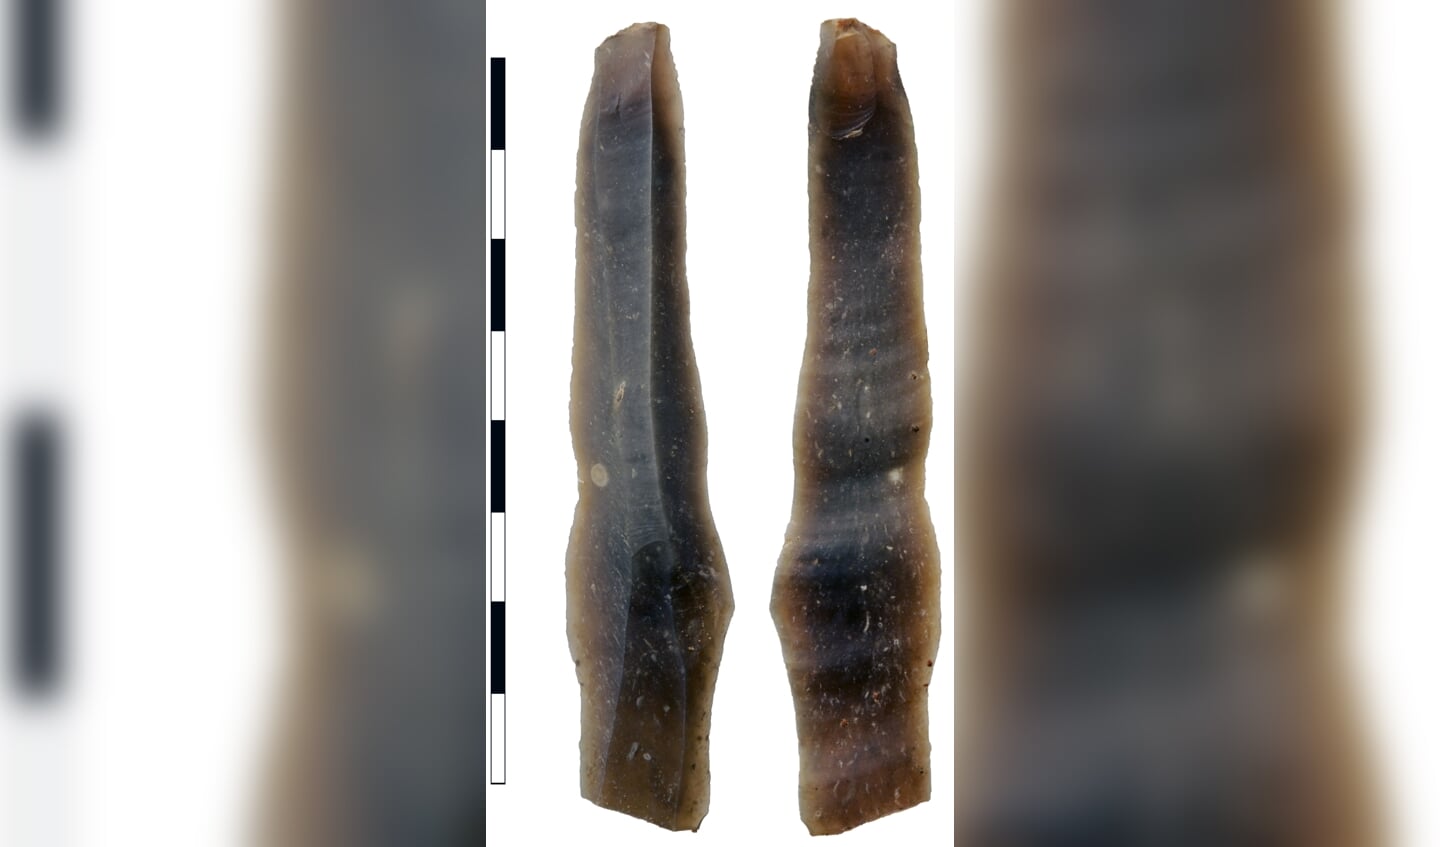 De gevonden mesklingen uit de oudste menselijke nederzetting tot nu toe in Zutphen. Foto: Erfgoedcentrum Zutphen